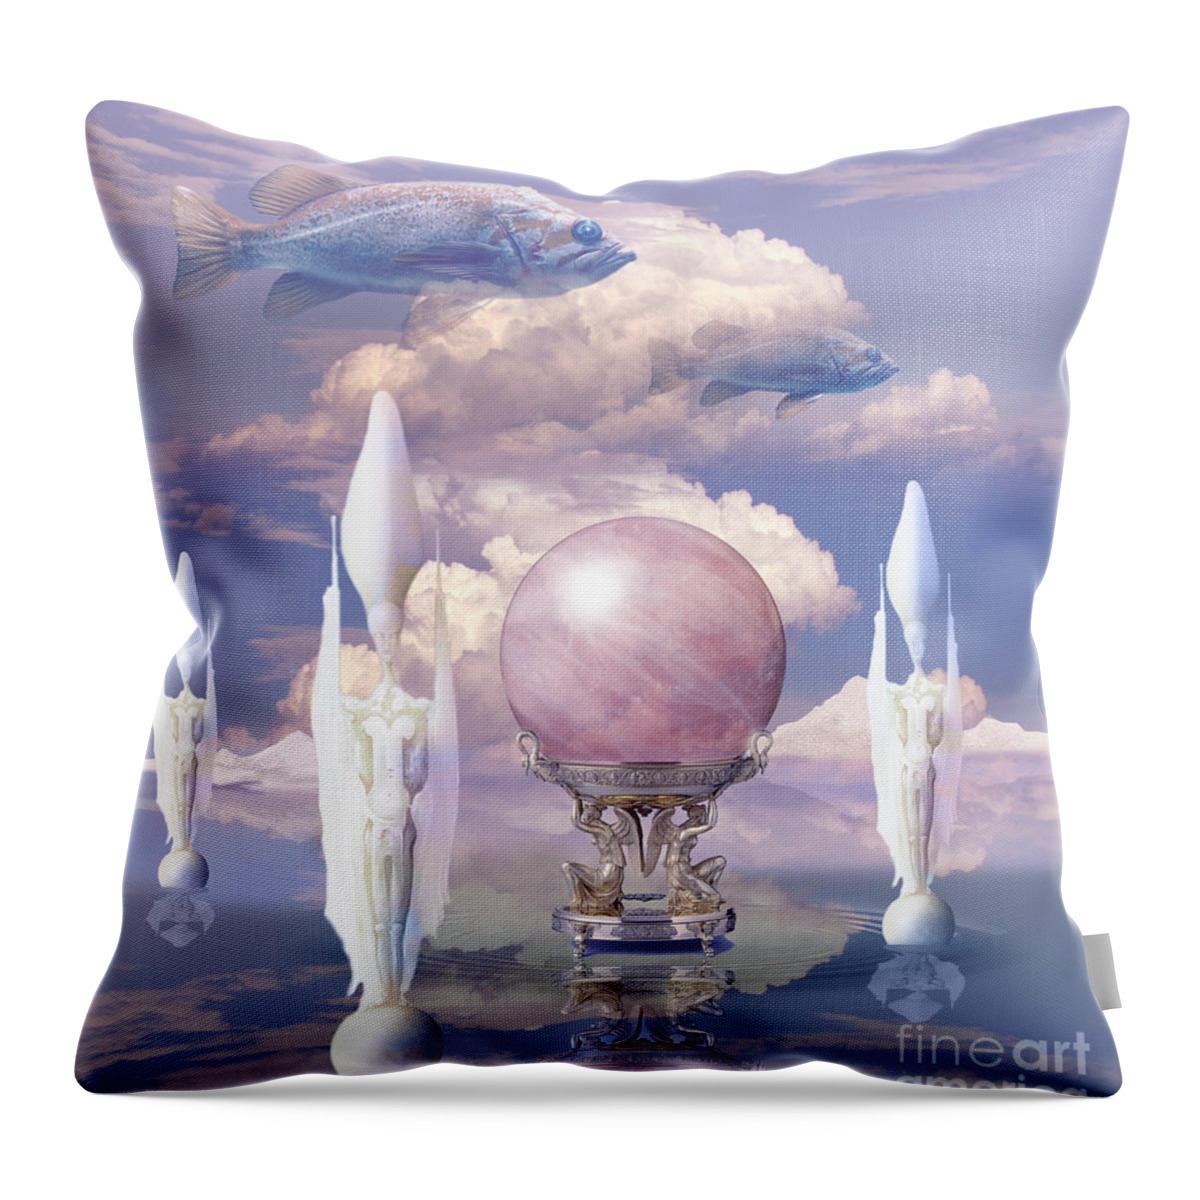 Crystal Ball Throw Pillow featuring the digital art Crystal ball by Alexa Szlavics